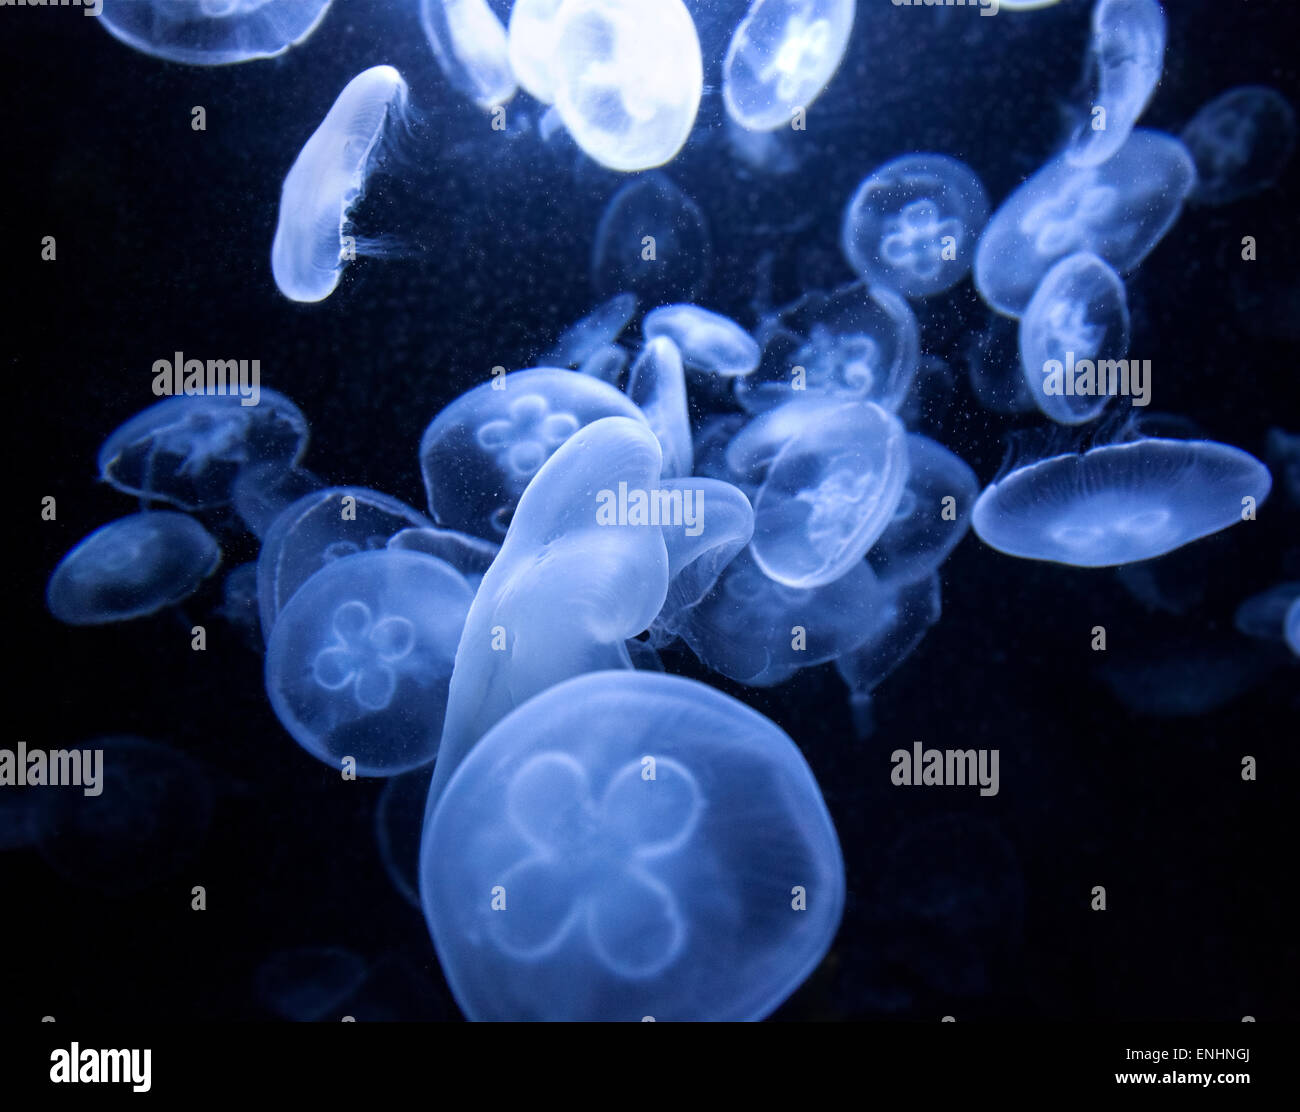 Geheimnisvolle Natur Hintergrund machte der Medusen mit blauem Licht im Aquarium beleuchtet. Stockfoto